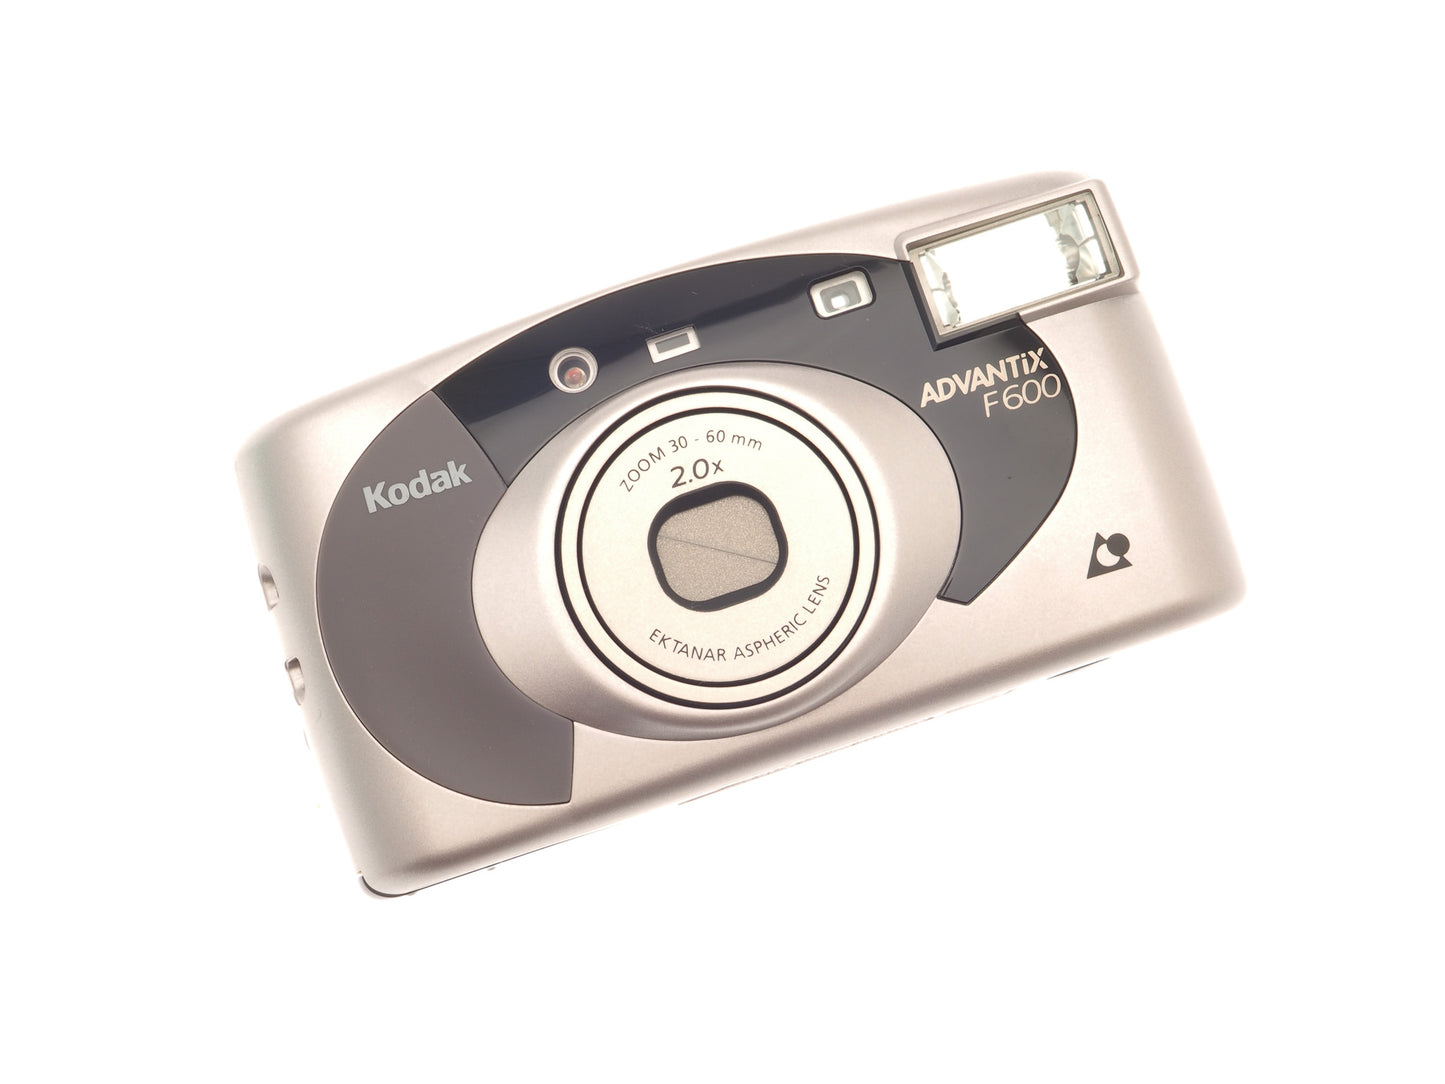 Kodak Advantix F600 APS Camera - Camera